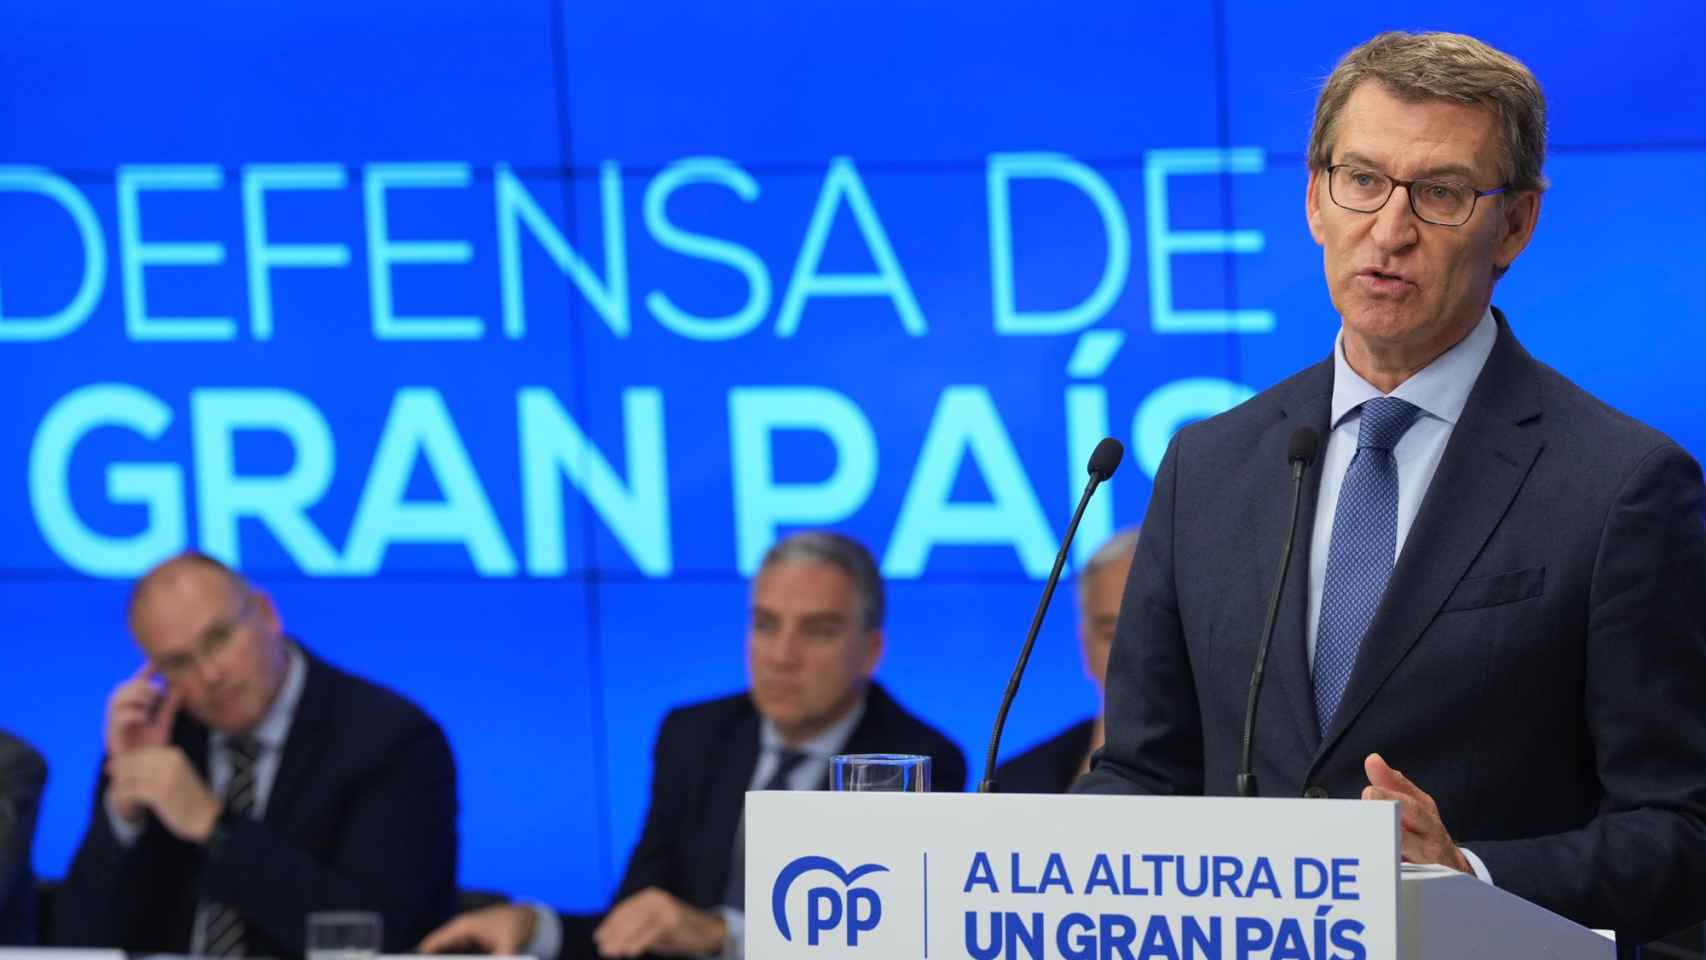 Feijóo cambia el logo del PP: elimina la bandera de España que colocó Casado thumbnail